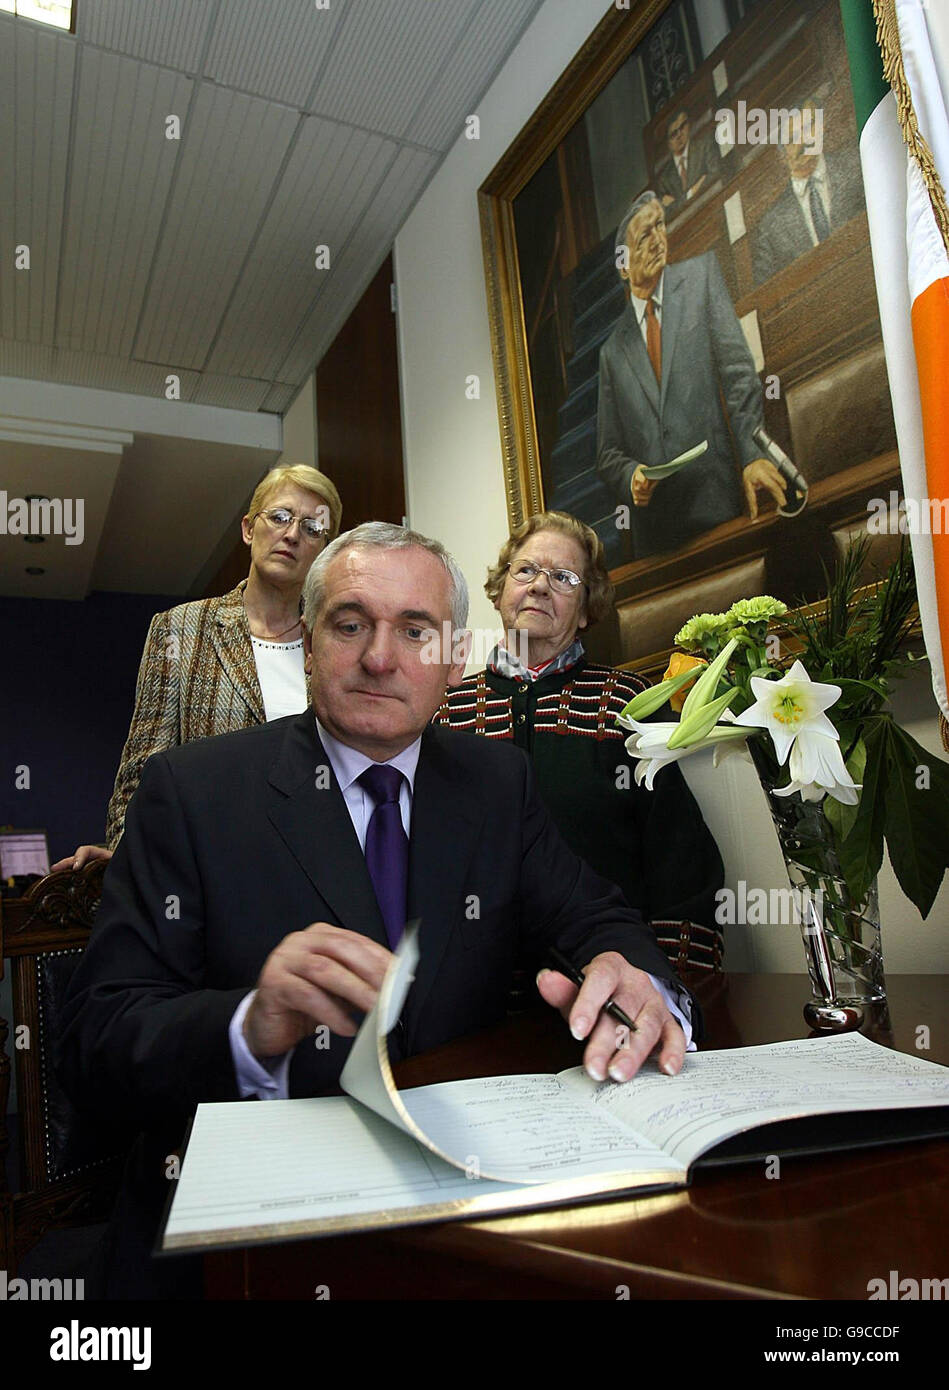 Taoiseach Bertie Ahern observé par les membres du public de signer un livre de condoléances pour l'ancien Taoiseach Charles Haughey au siège du parti Fianna Fail à Dublin. Banque D'Images